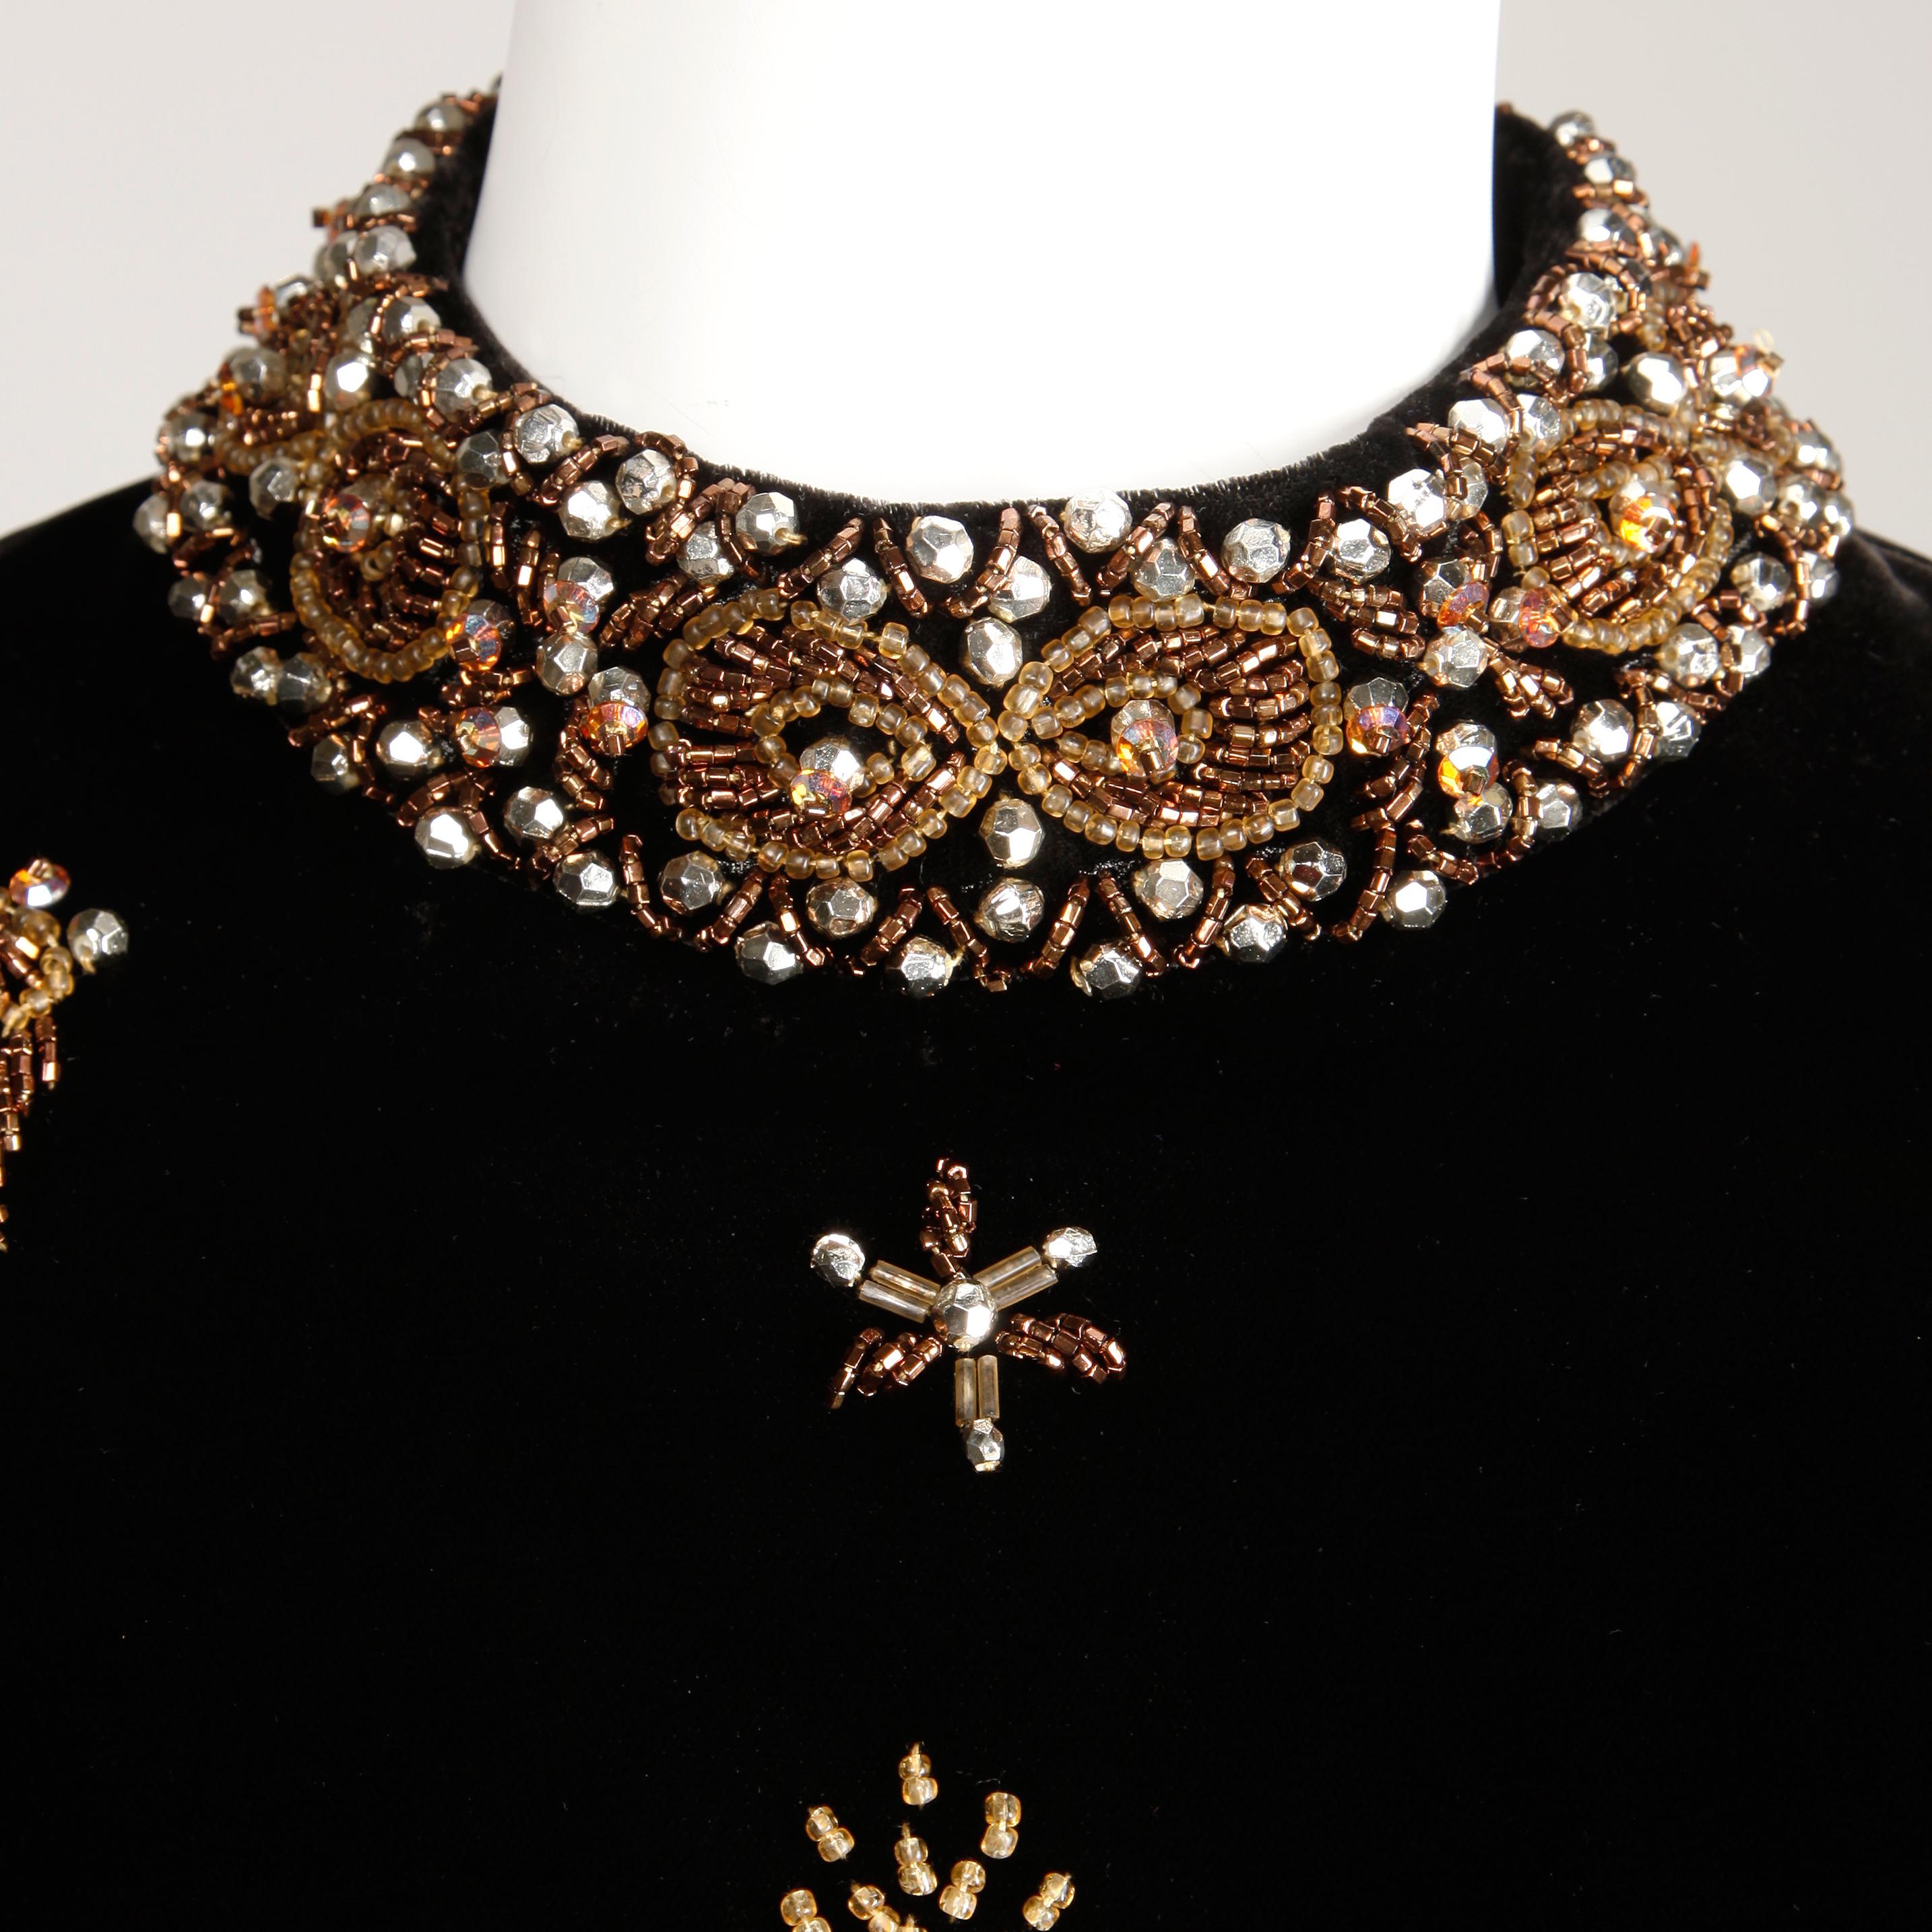 Atemberaubende Vintage 1960er Jahre schwarzem Samt Abendkleid oder Kleid mit Hand getan metallischen Pailletten, Perlen und Strass-Verzierung. Vollständig gefüttert mit Metallreißverschluss und Hakenverschluss hinten. Passt wie eine moderne Größe